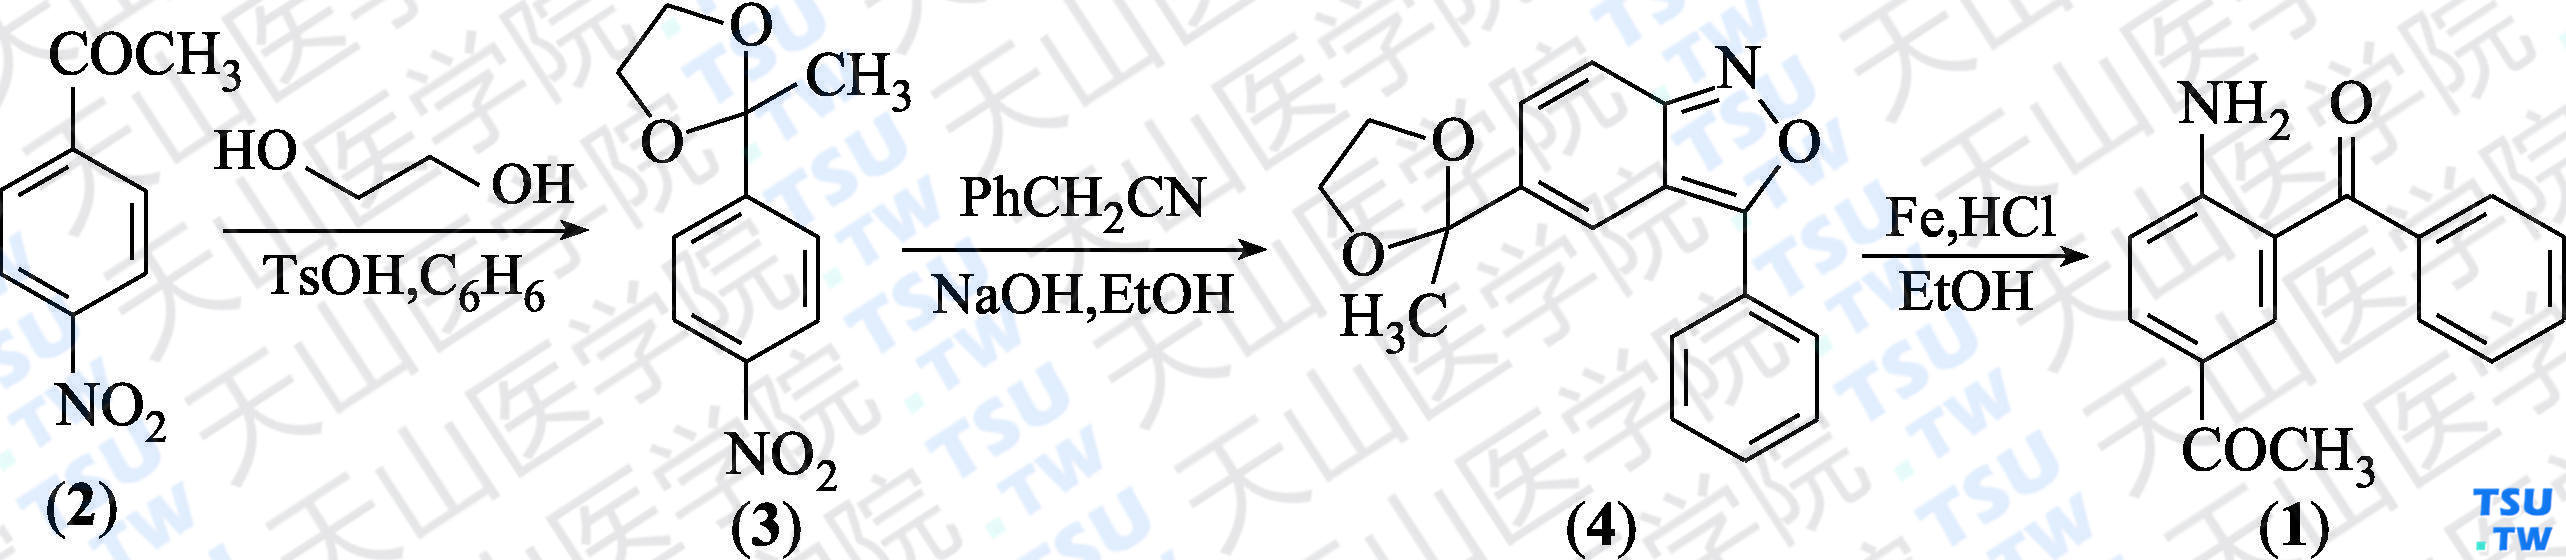 2-氨基-5-乙酰基二苯甲酮（分子式：C<sub>15</sub>H<sub>13</sub>NO<sub>2</sub>）的合成方法路线及其结构式